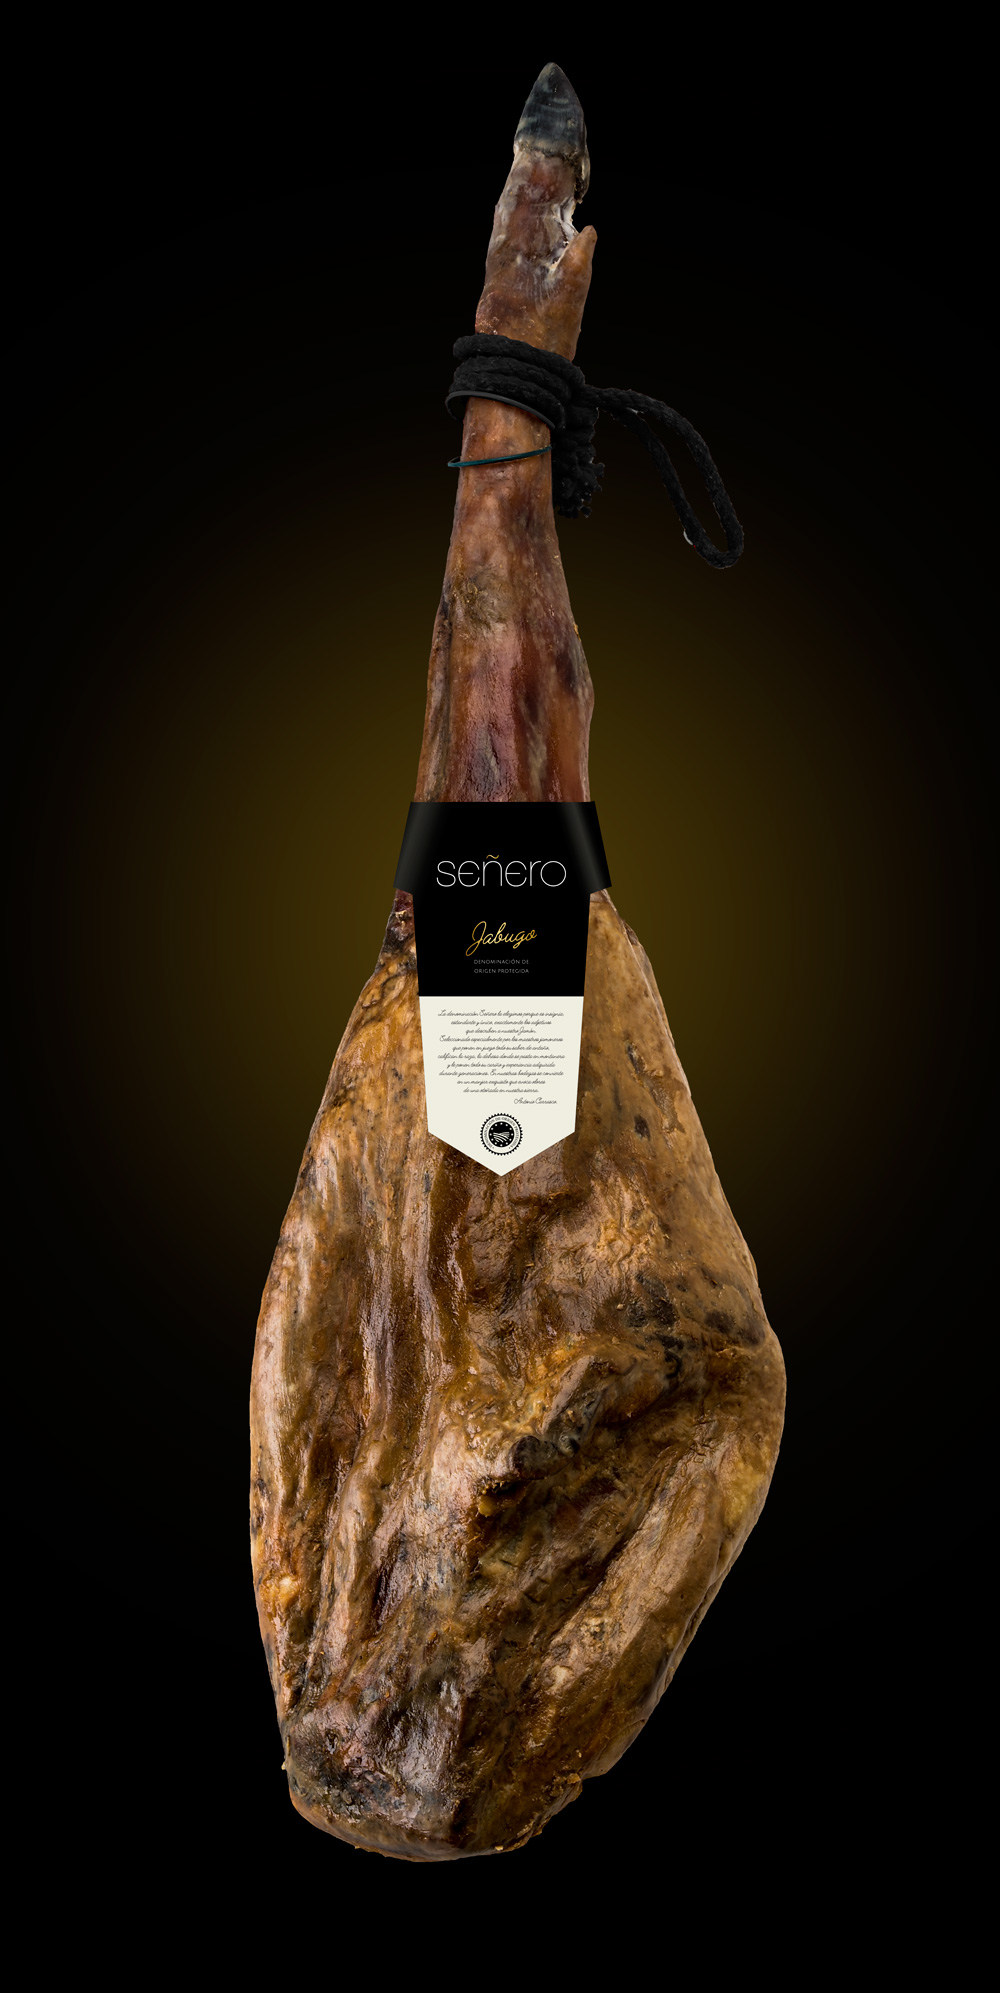 Label design for Señero from Jabugo